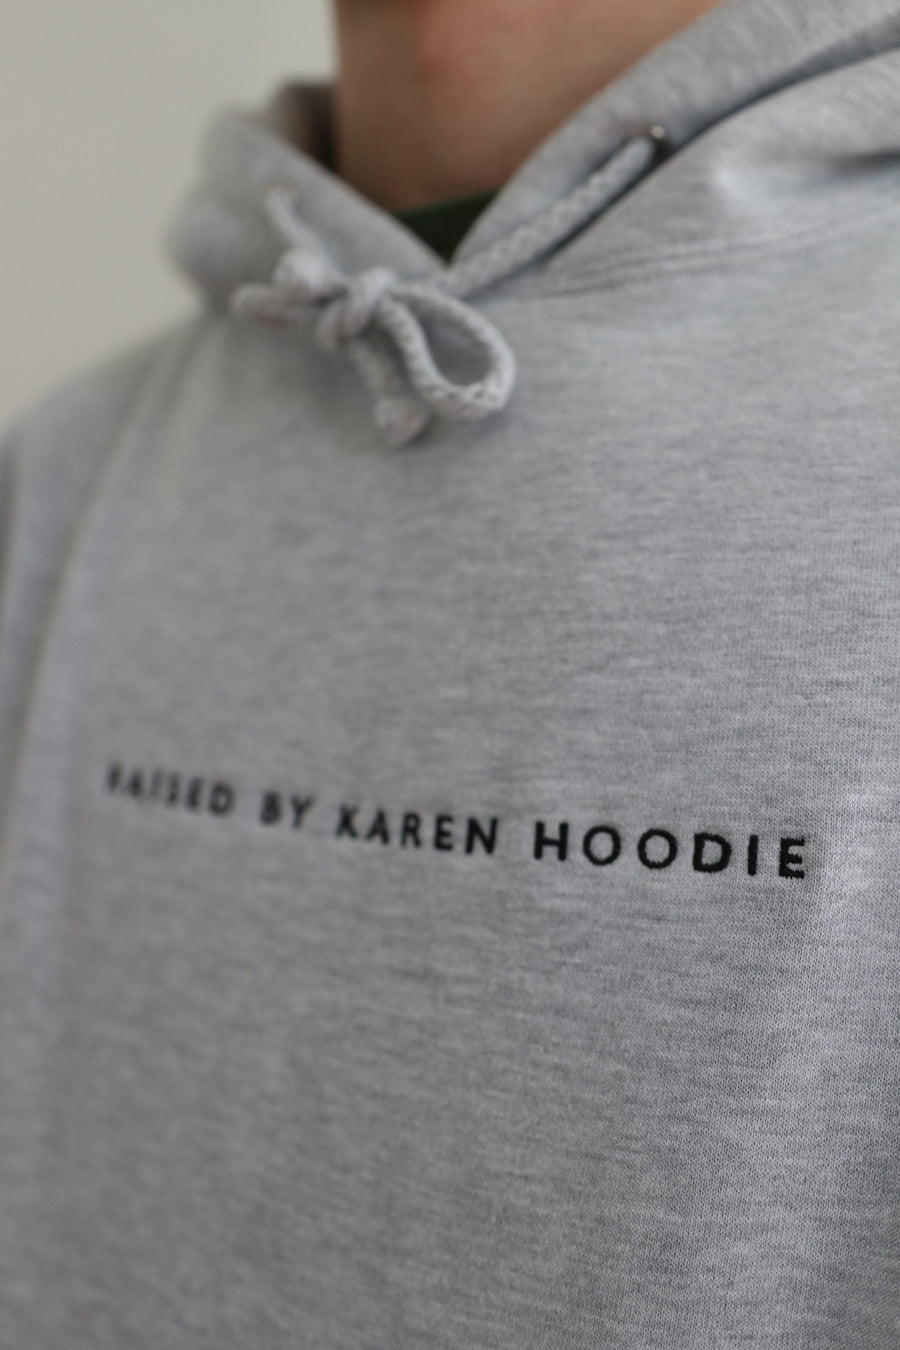 'Raised by Karen Hoodie' (Premium)